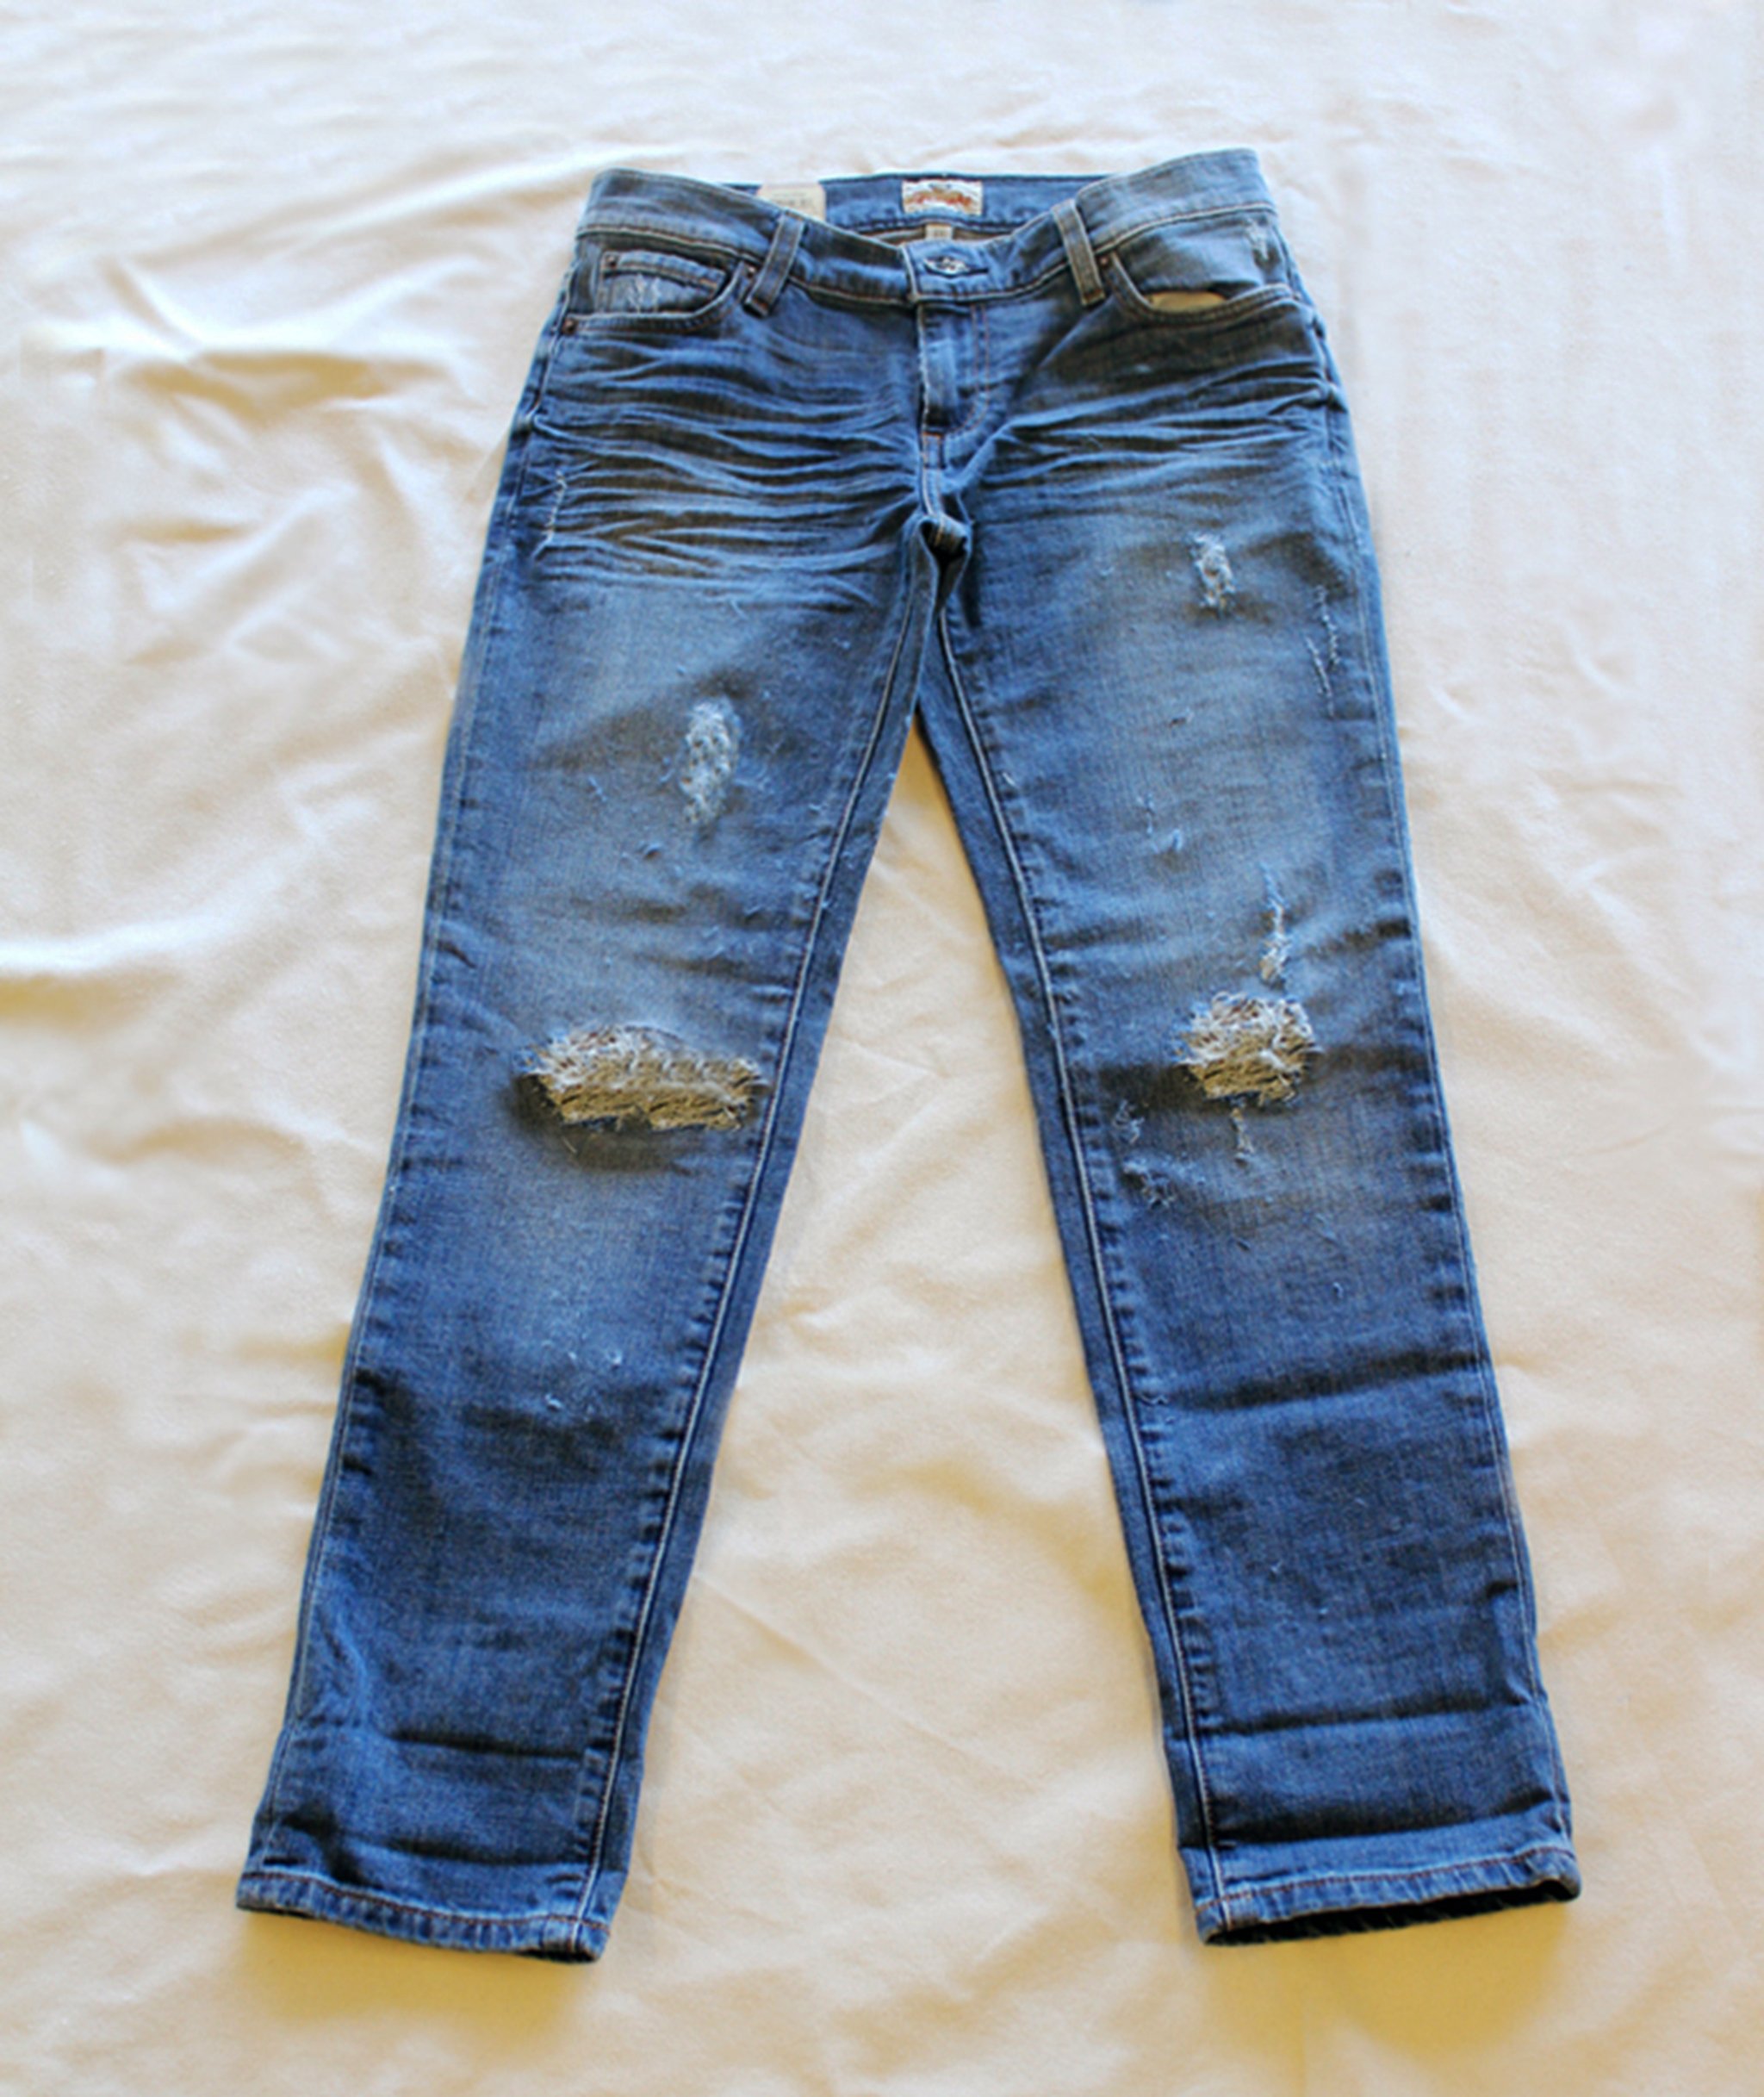 Четверо джинсов. Старые джинсы. Старомодные джинсы. Реставрировать джинсы. Джинсы old.